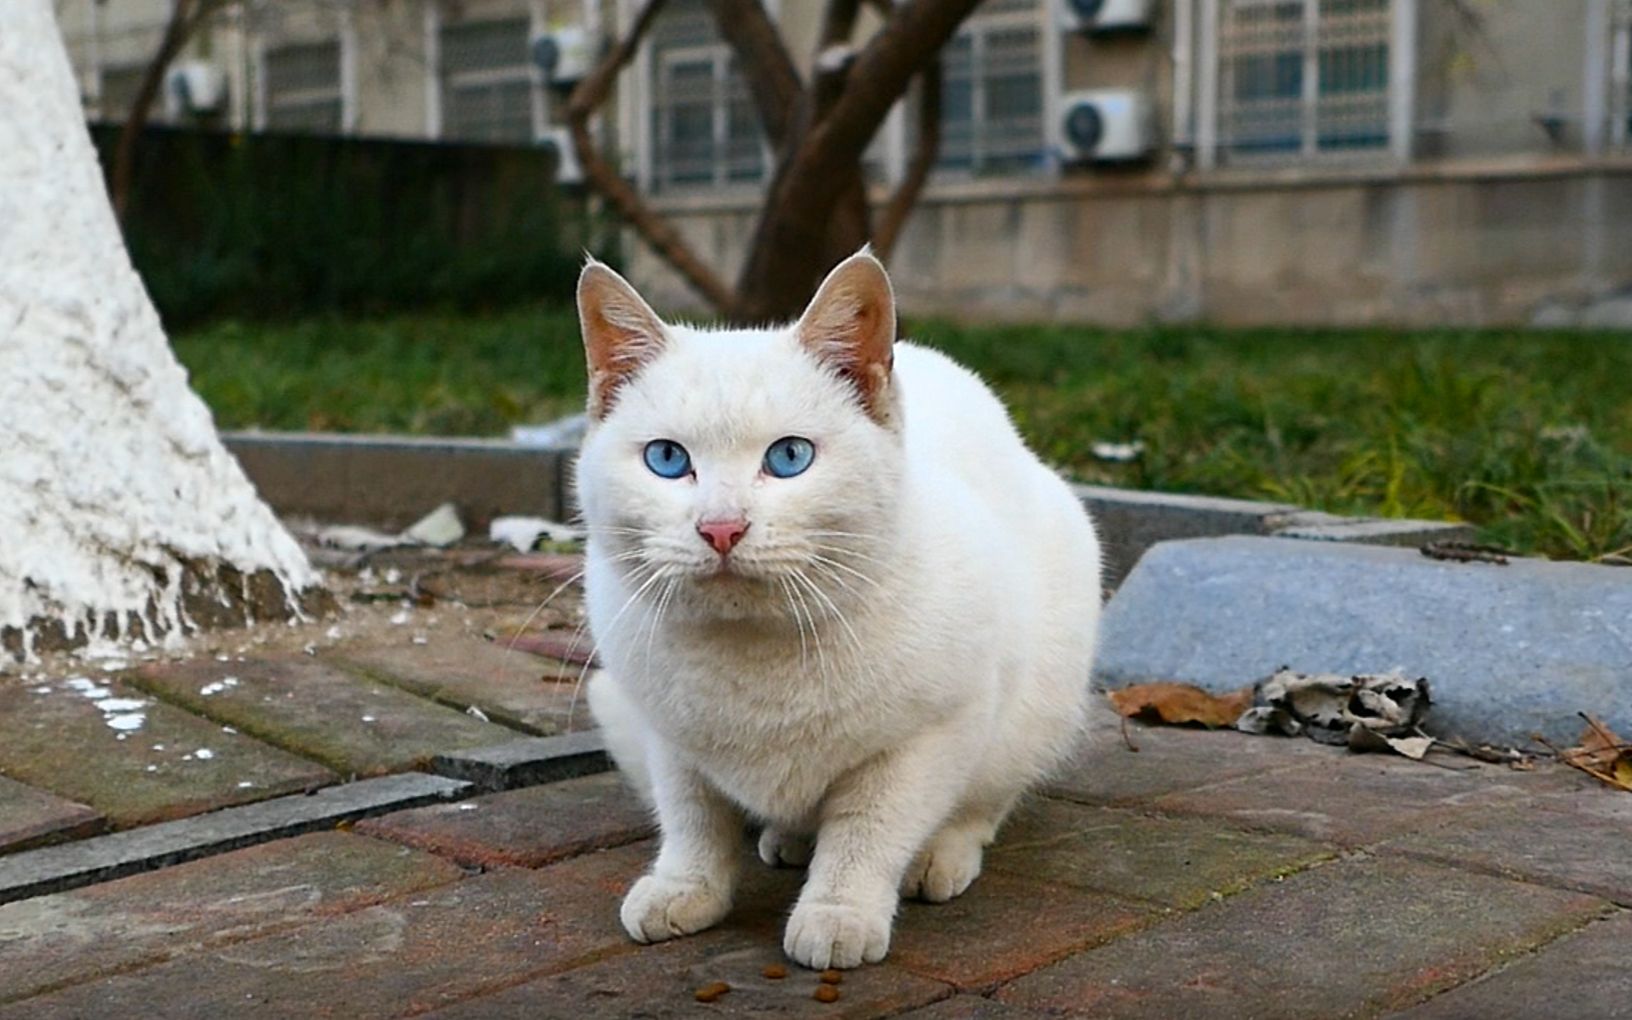 蓝眼白猫500元图片